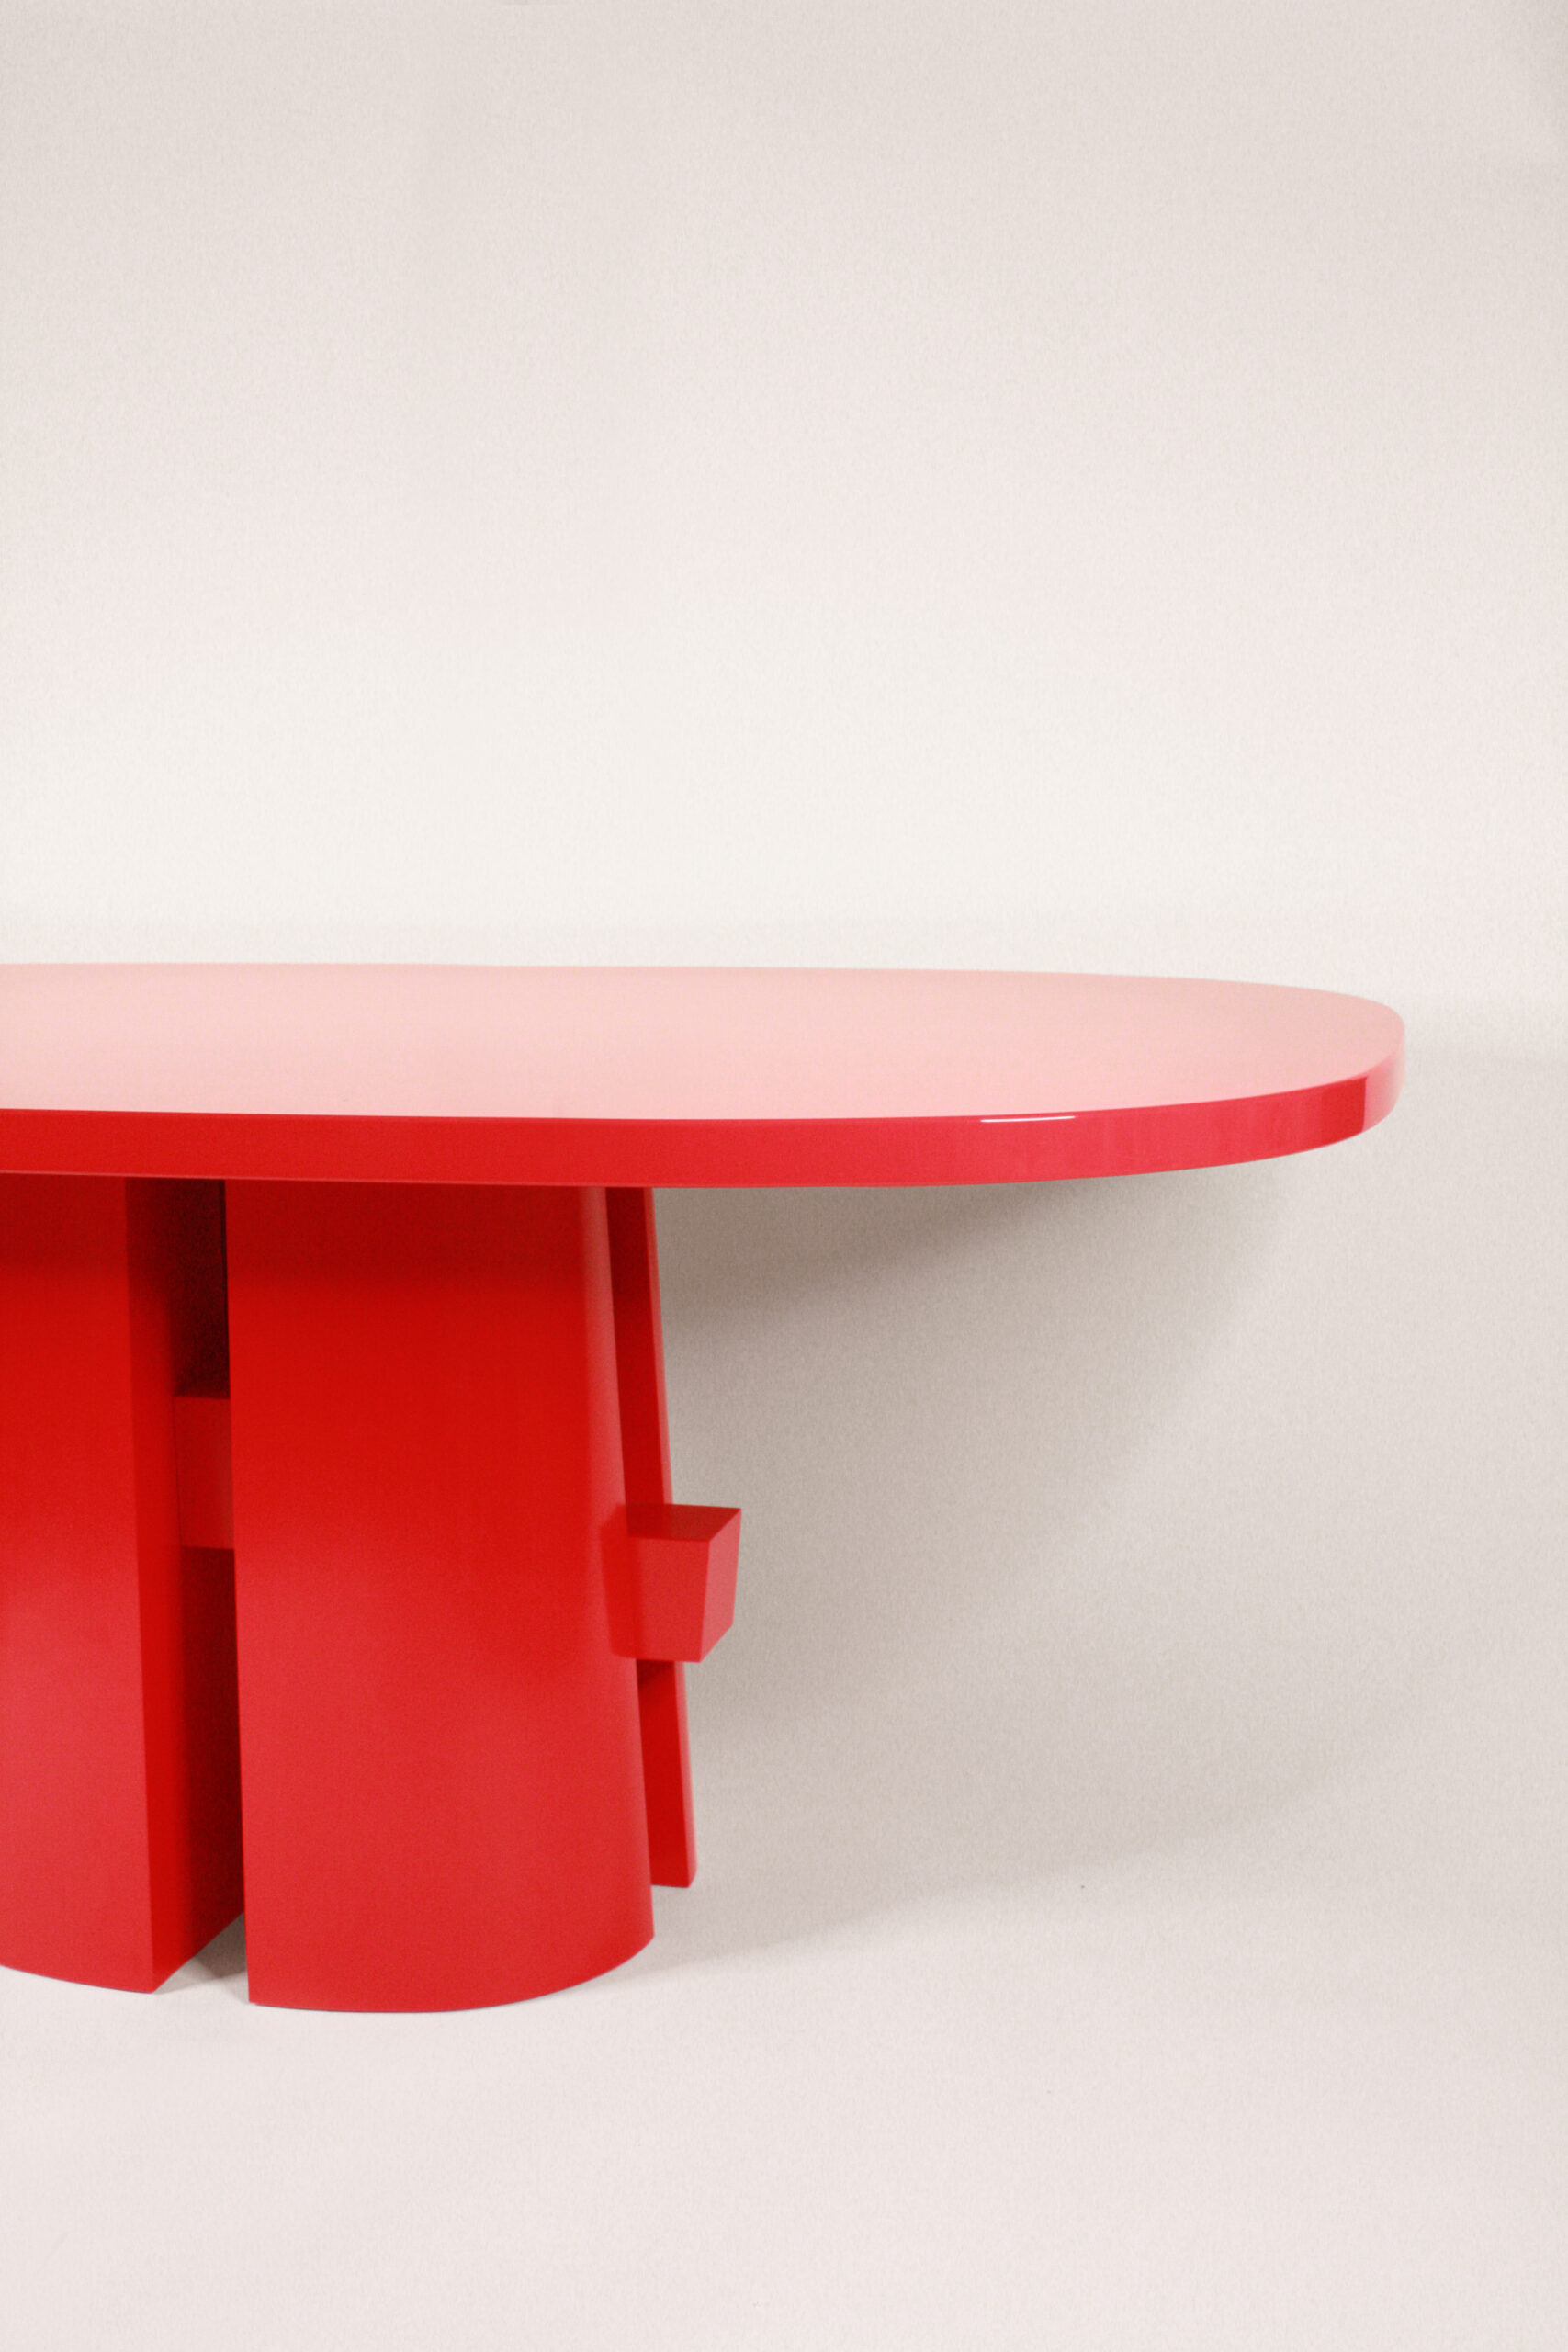 table rouge detail 1_retouche